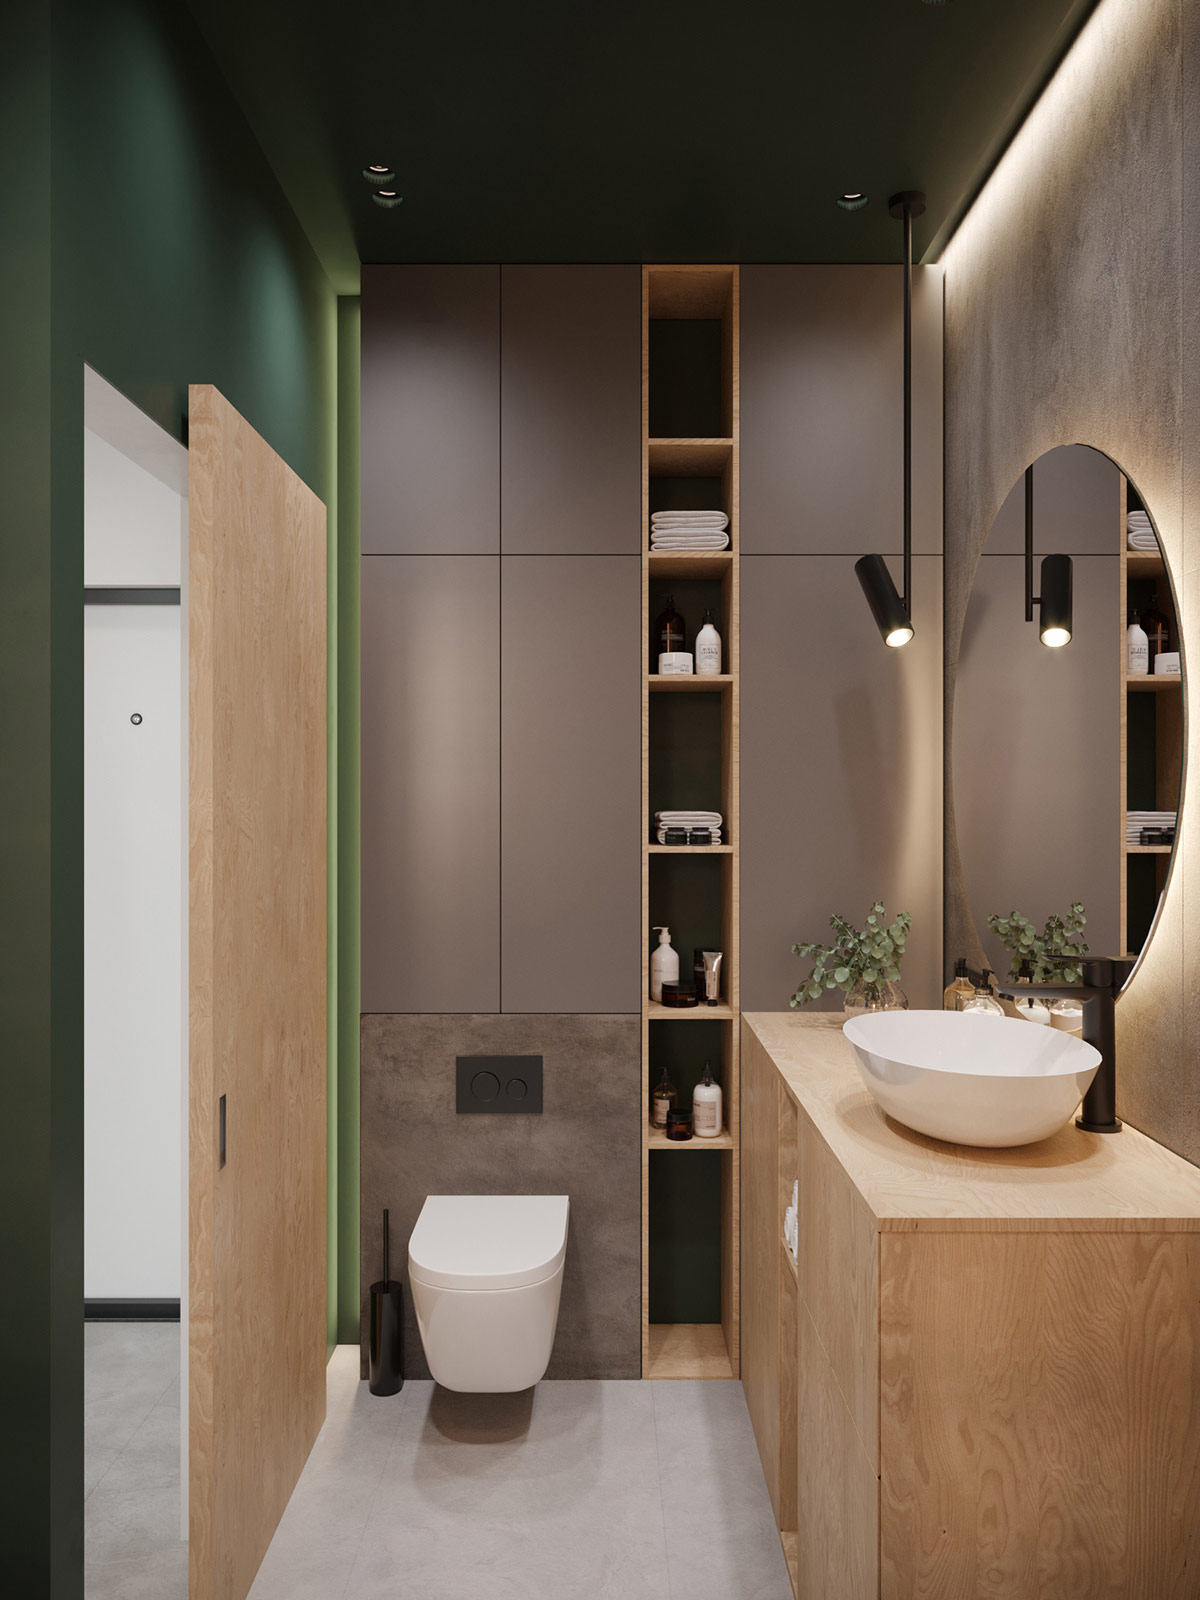 hình ảnh phòng tắm với trần và tường sơn màu xanh lá, gương tròn, đèn LED, đèn âm trần, hộc kệ lưu trữ khăn tắm